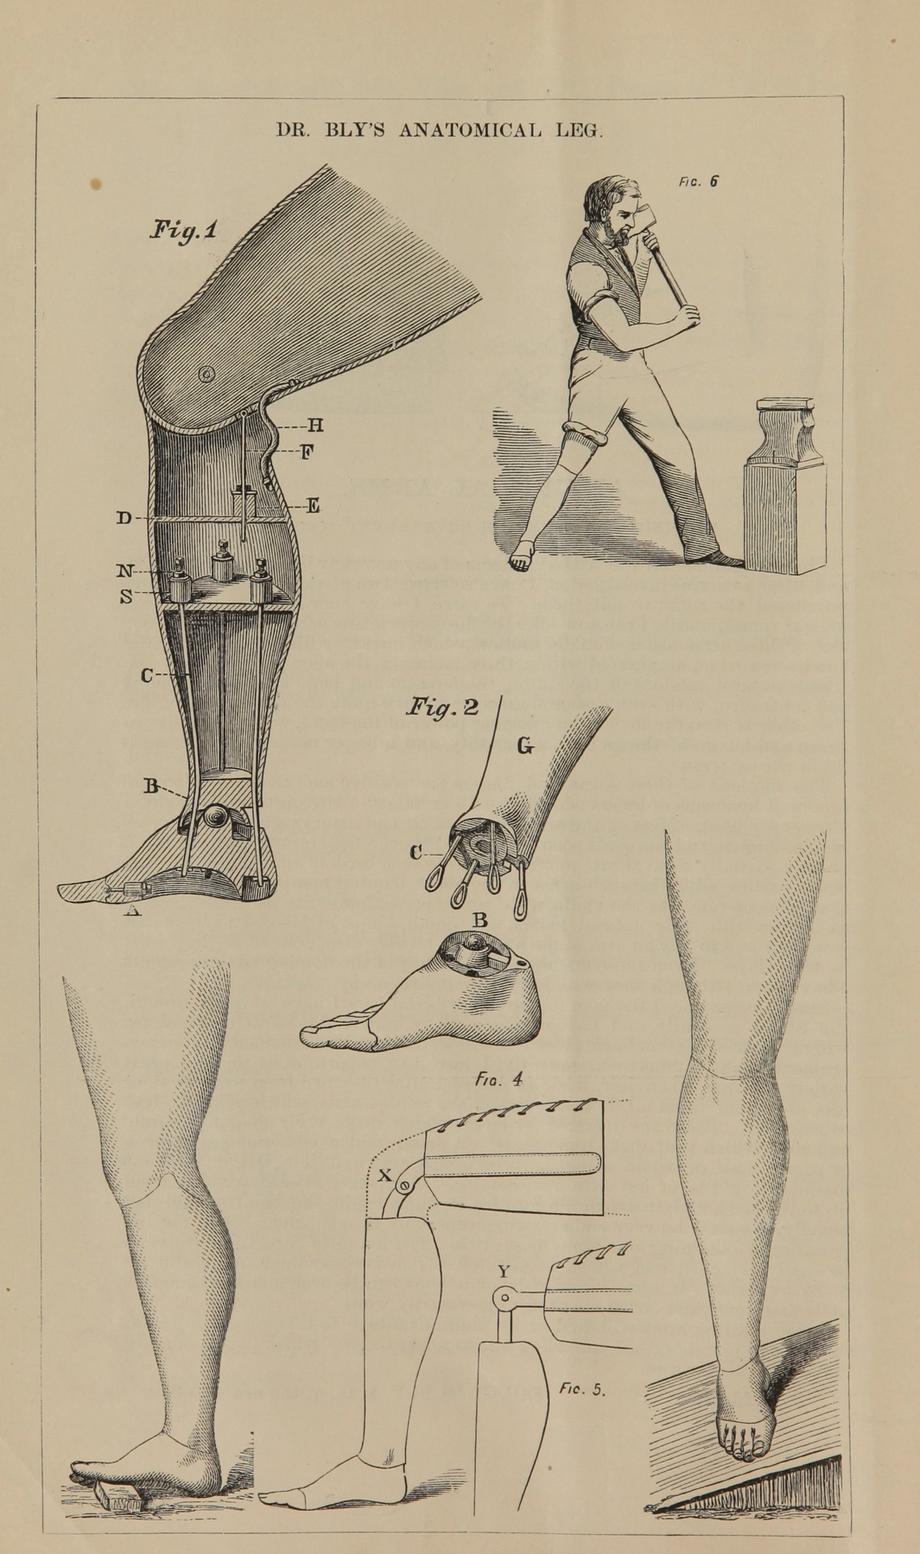 Rycina z publikacji „Niezwykłe wynalazki” Douglasa Bly ok. 1876 r